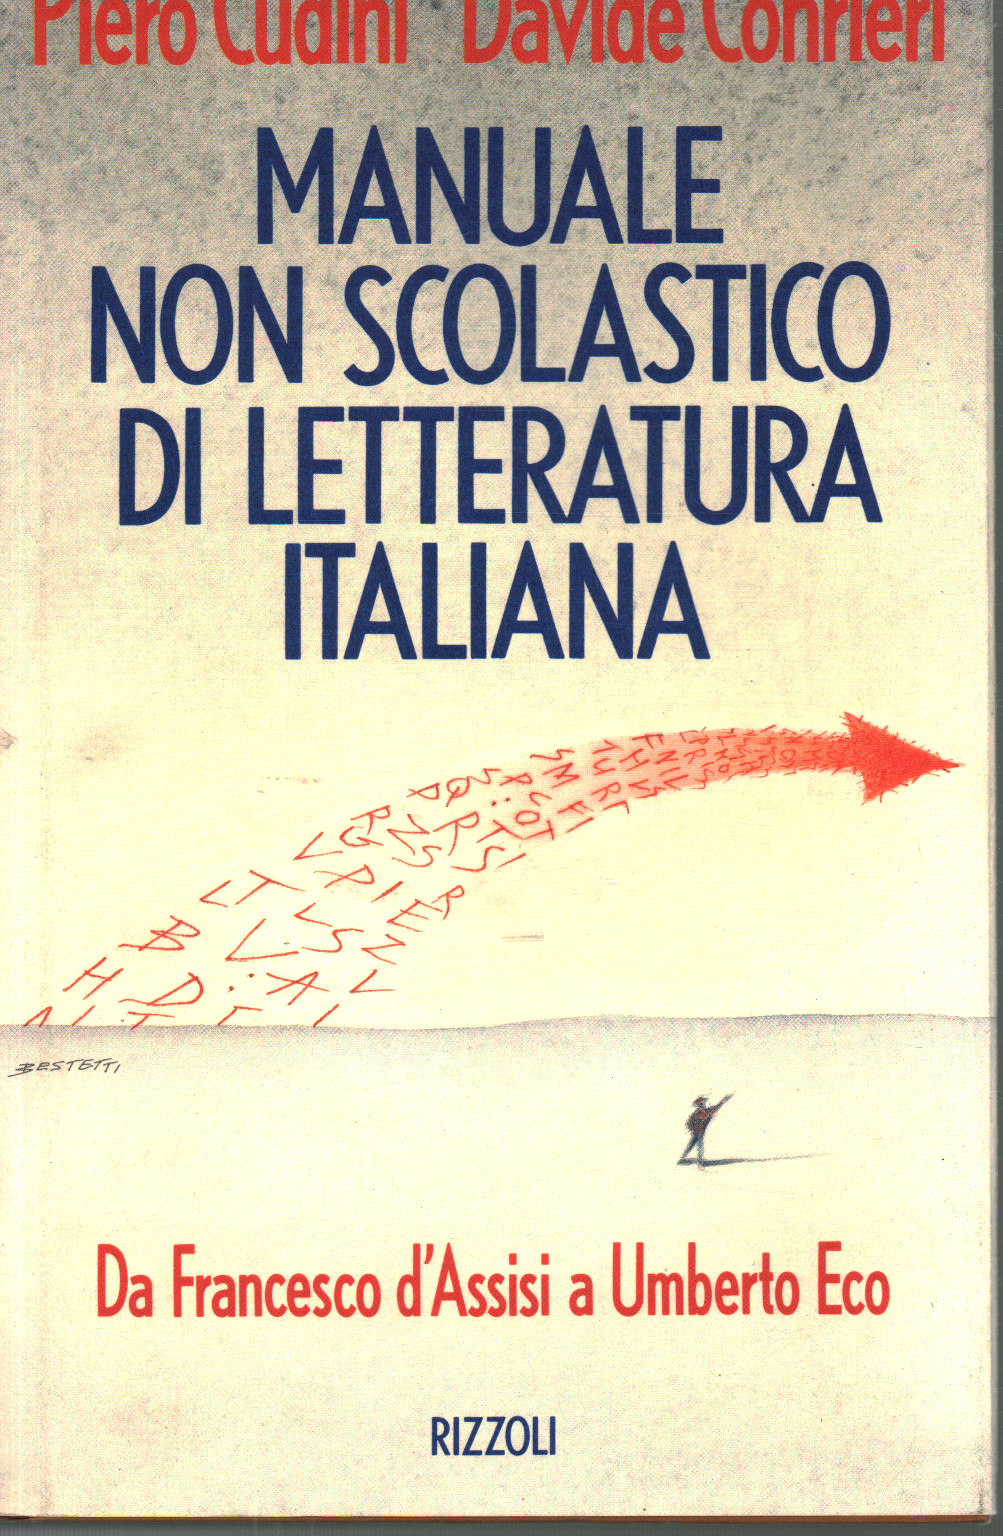 Manuale non scolastico di letteratura italiana, Piero Cudini Davide Conrieri